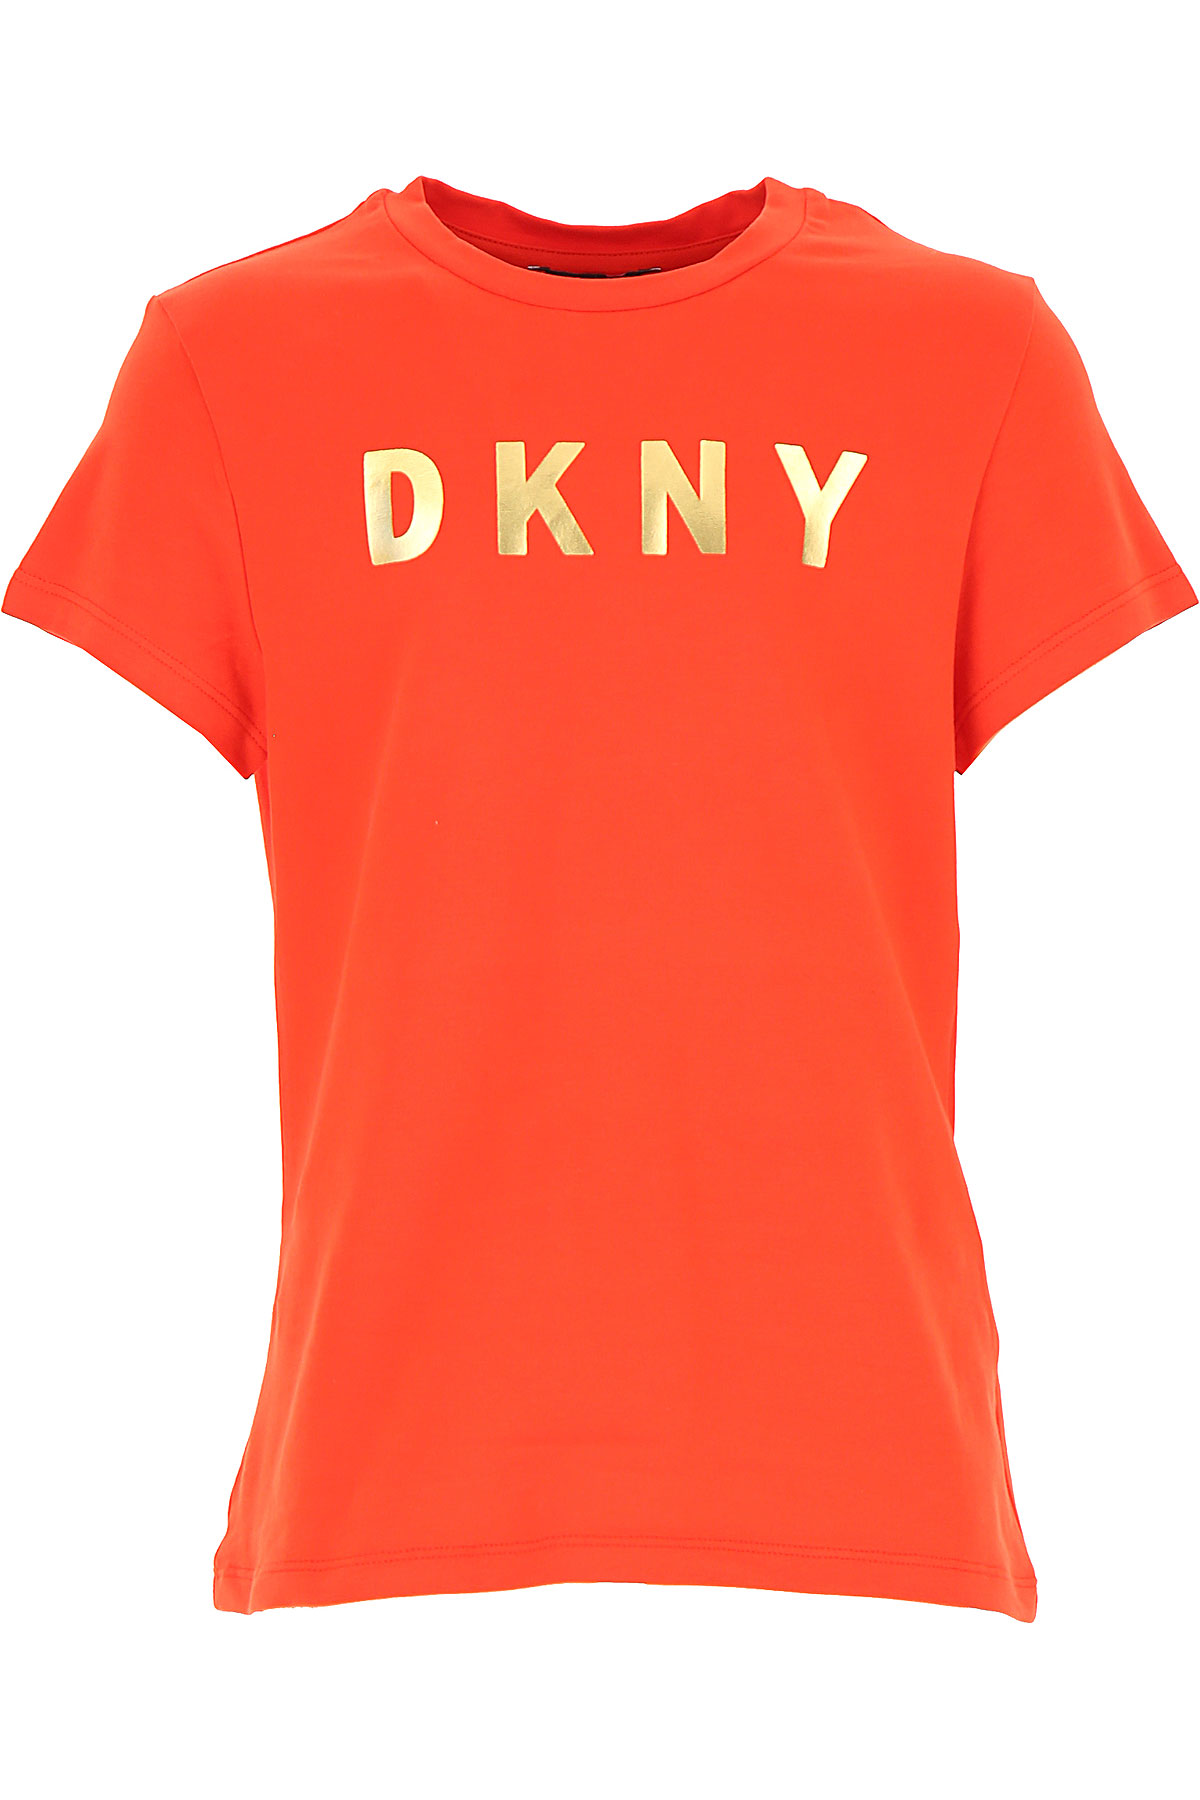 DKNY Kinder T-Shirt für Mädchen, Orangen Rot, Baumwolle, 2017, 10Y 12Y 14Y 16Y 8Y